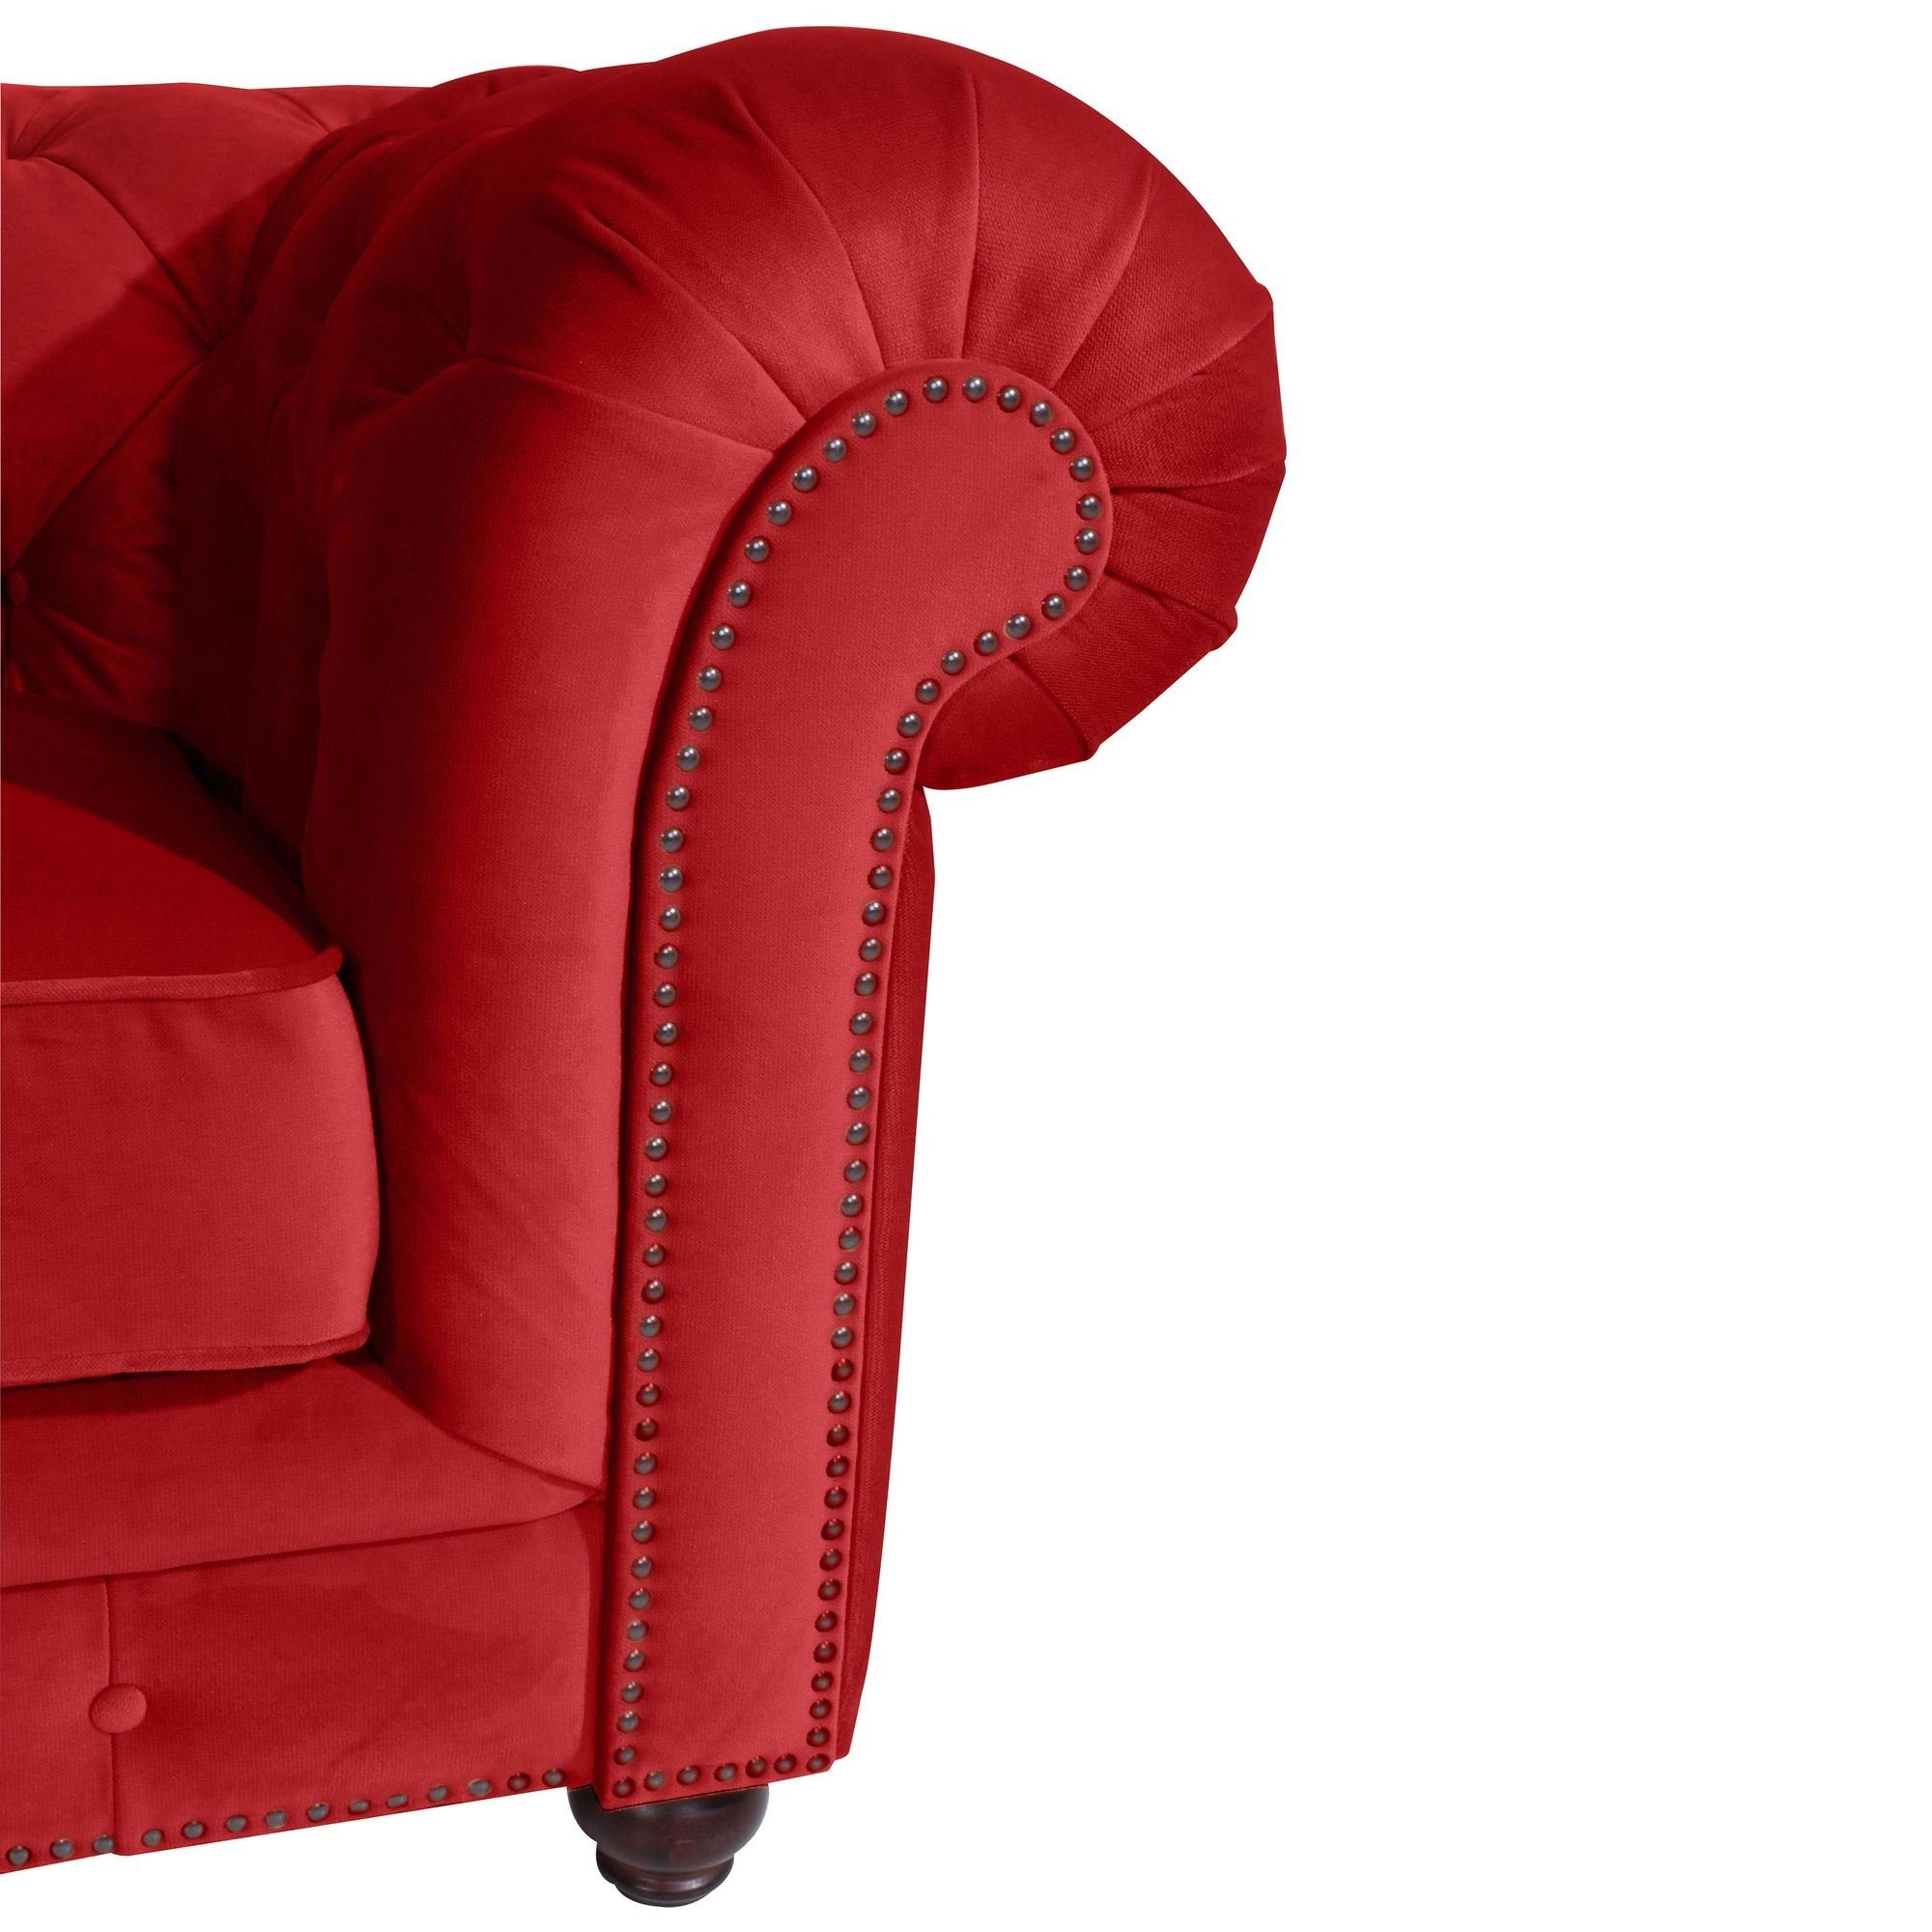 verarbeitet,bequemer nussbaum Sessel Sessel hochwertig Kathe 22492 58 Buche Versand, inkl. Bezug dunkel 1-St), aufm rot / Samtvelours Kostenlosem Sitz Kessel (Sparpreis